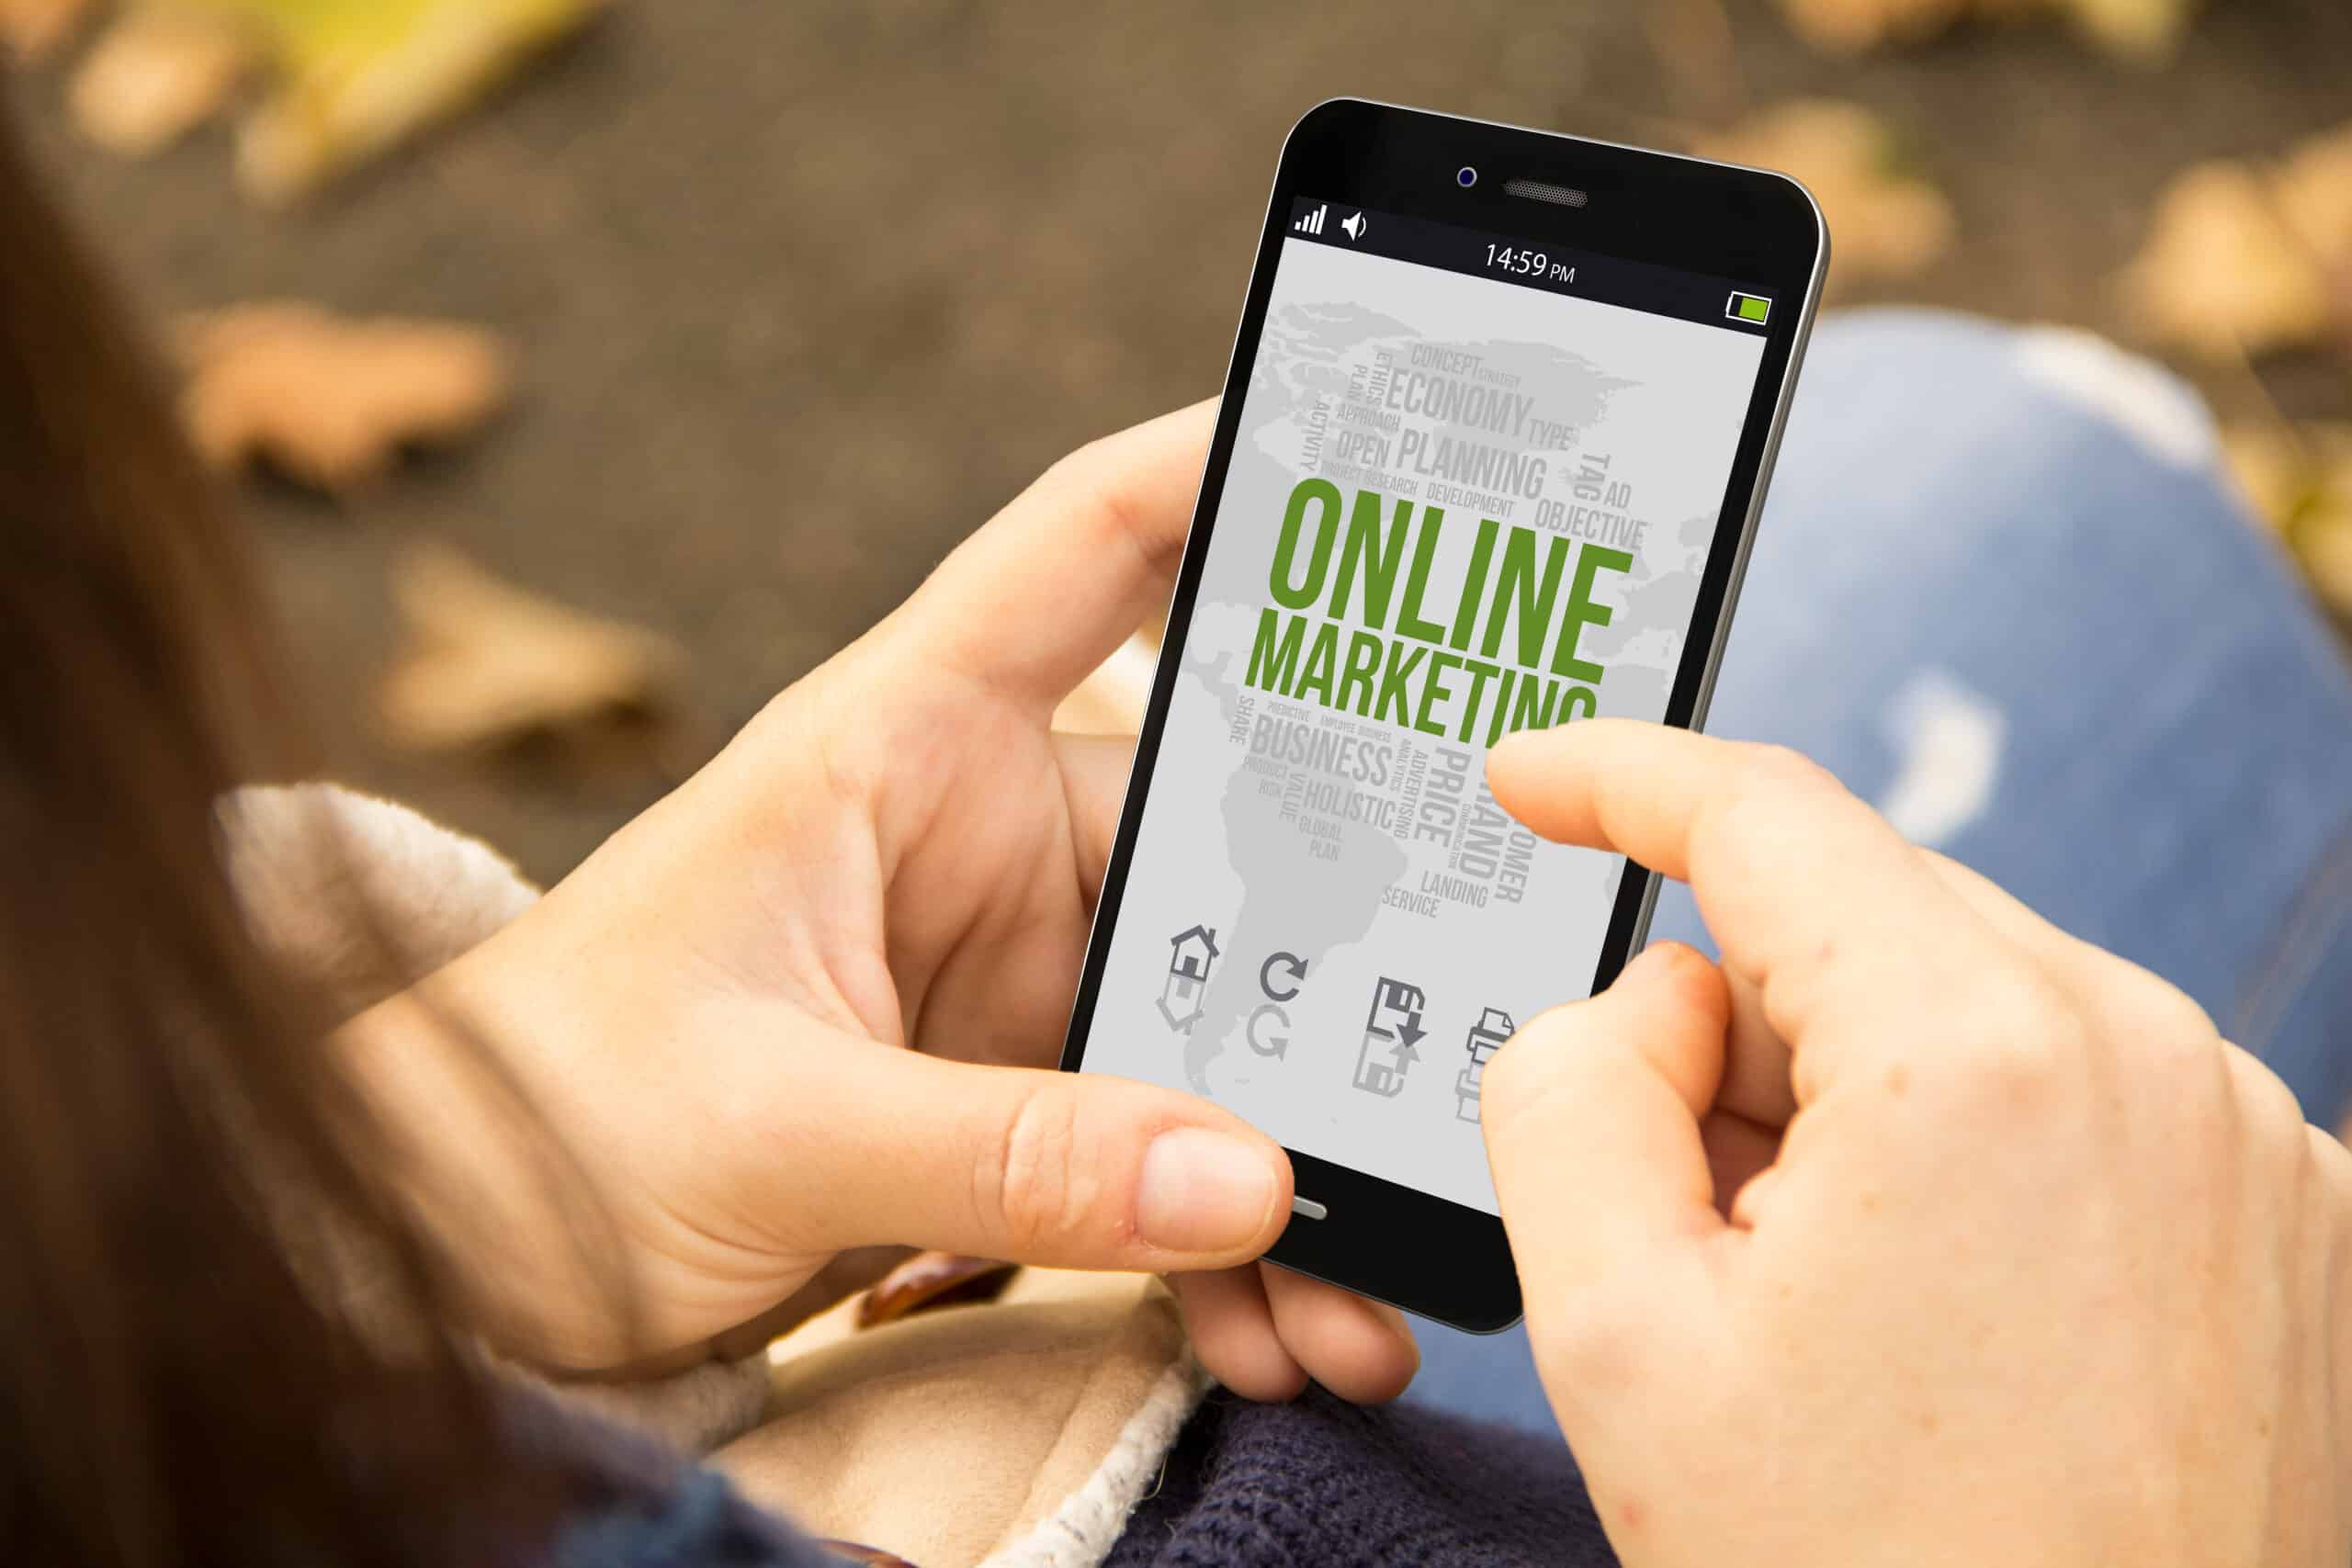 Digitales Geschäftskonzept: Eine Frau hält ein per 3D generiertes Smartphone mit Online-Marketing auf dem Bildschirm. Die Grafiken auf dem Bildschirm sind gestaltet.